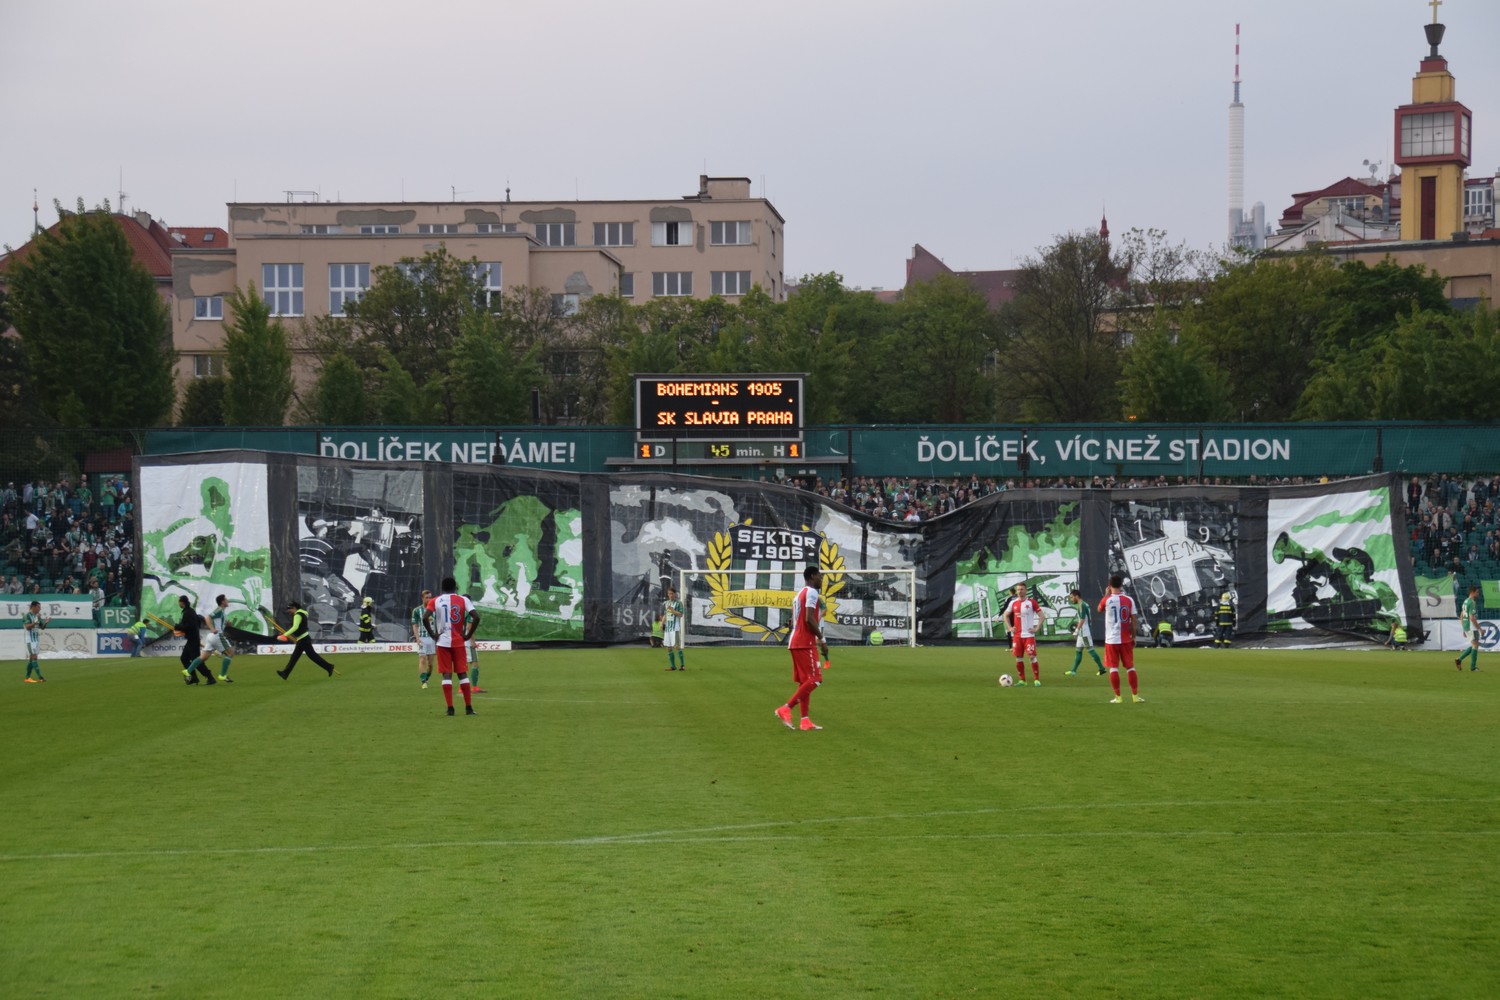 Bohemians Praha 1905 – SK Slavia Praha 1:3